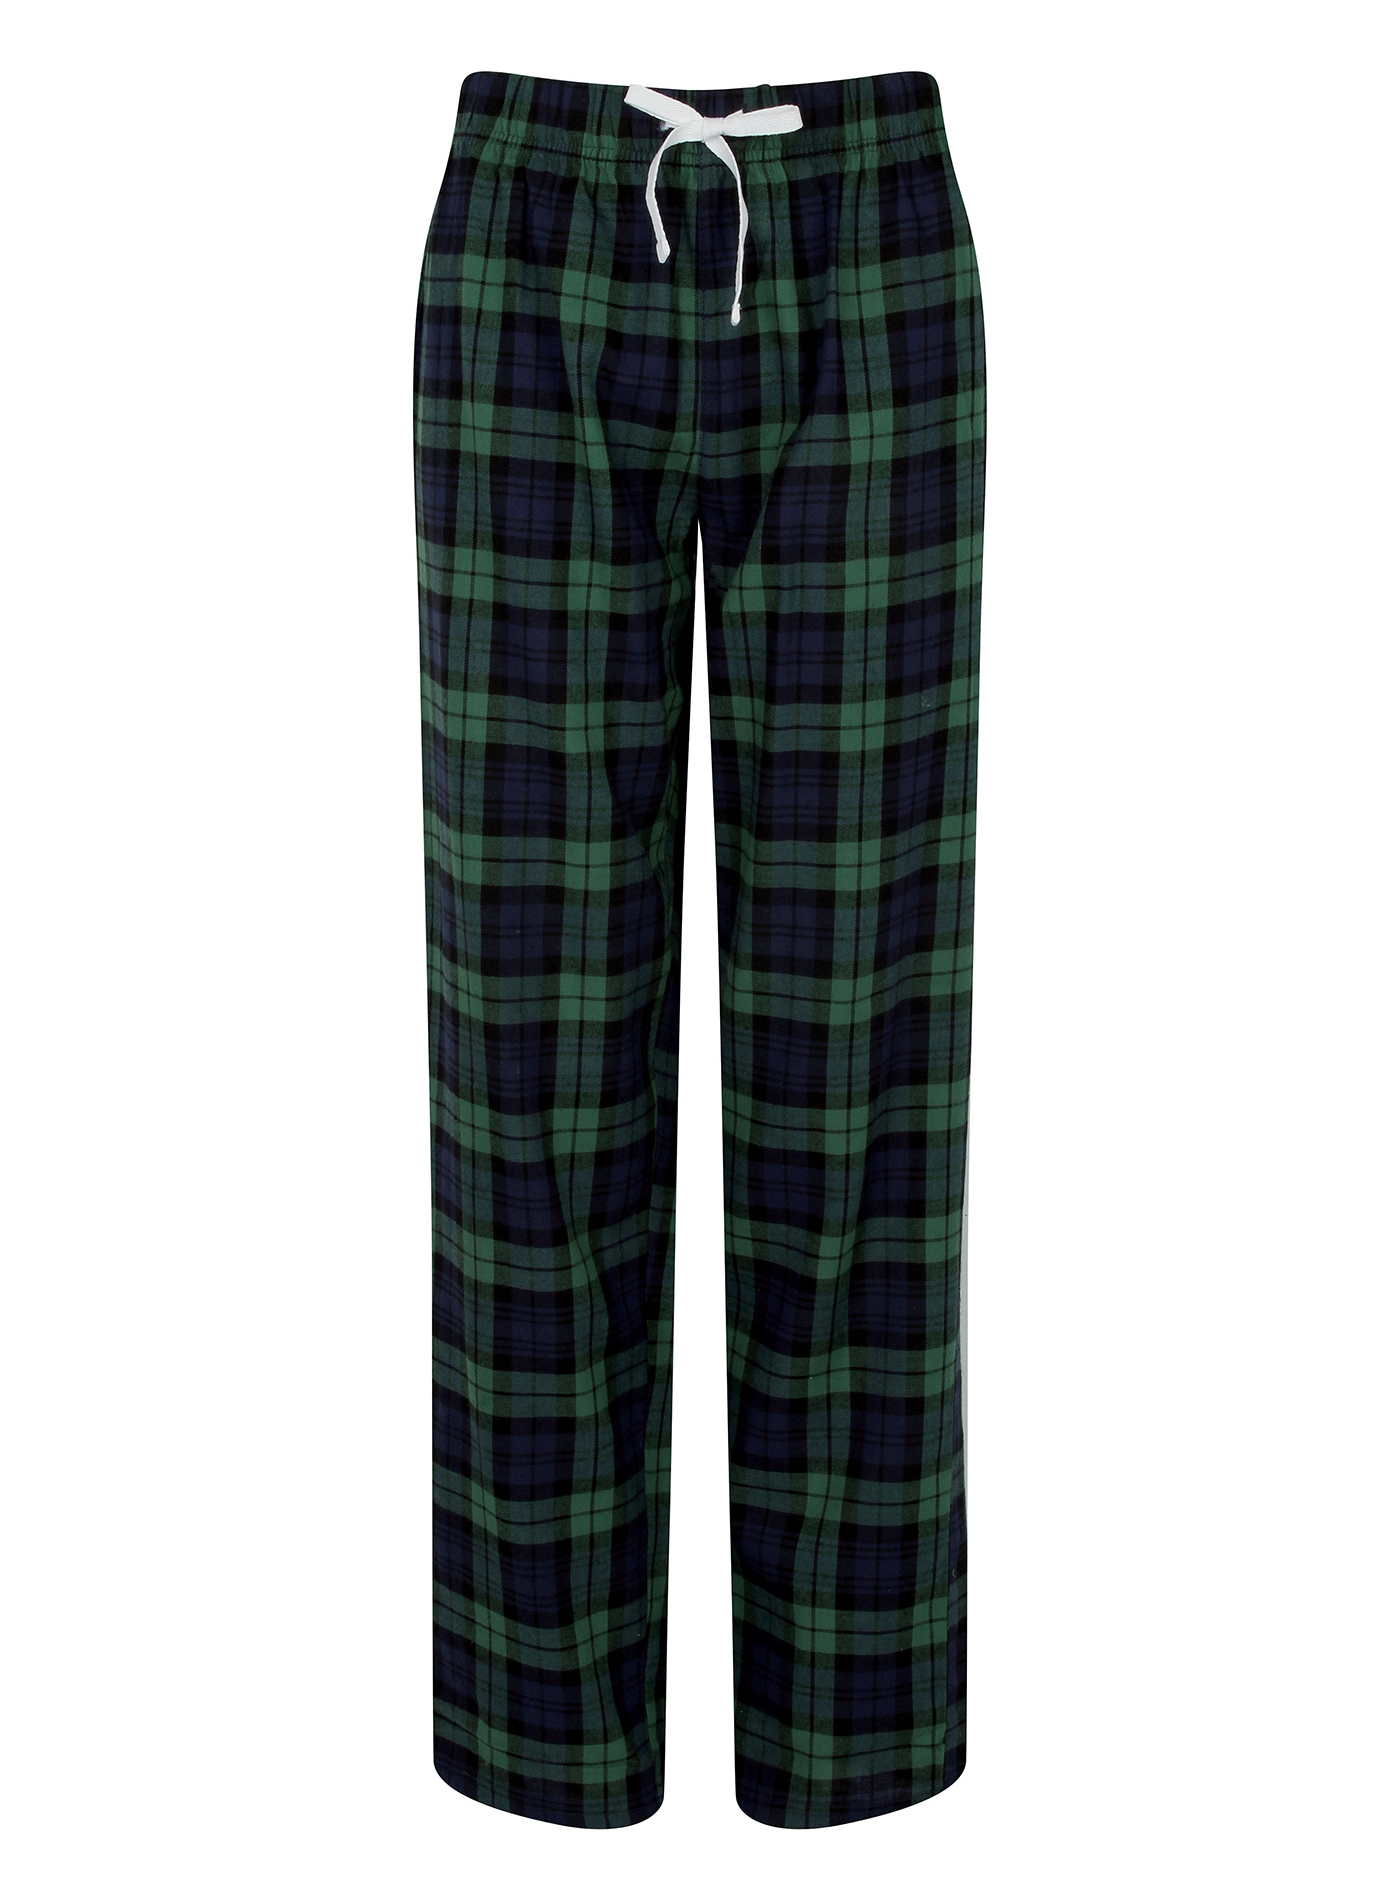 Dámské kalhoty na spaní Skinnifit Tartan - Zelená a modrá M